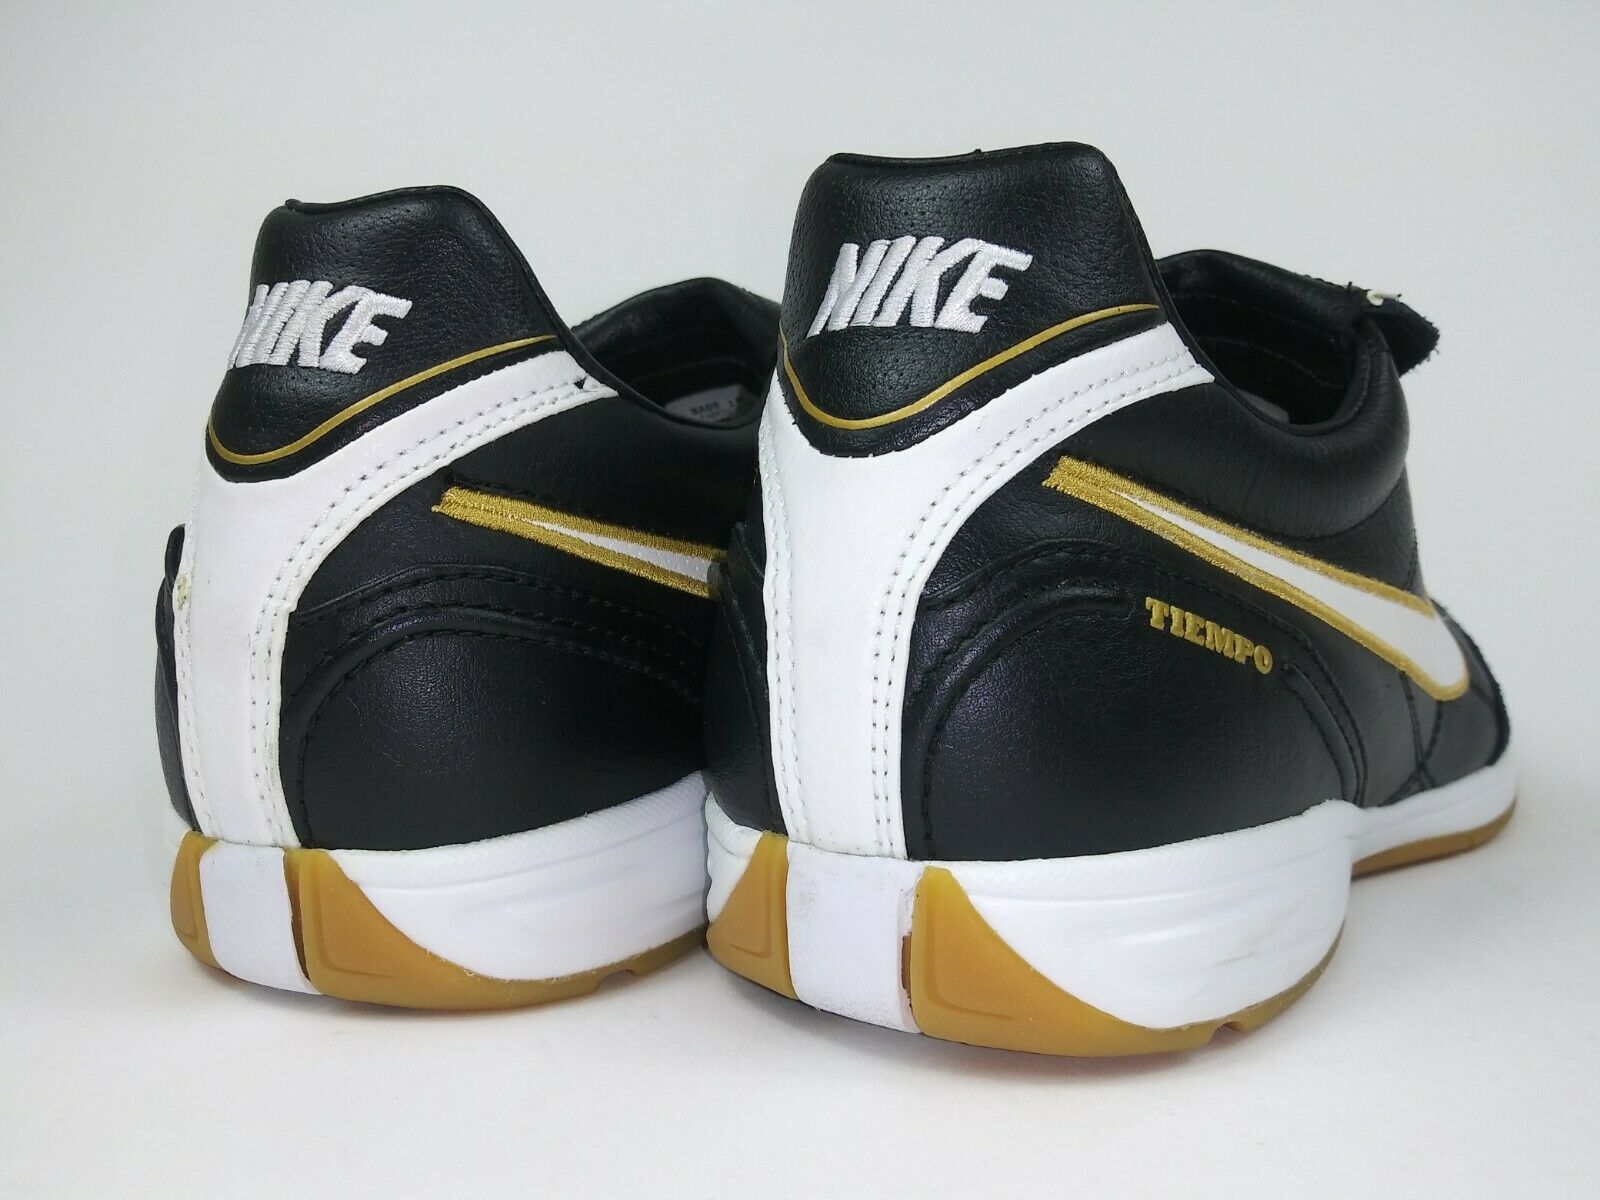 Perpetuo Relativo decidir Nike Tiempo lll IC Indoor Shoes Black Gold – Villegas Footwear